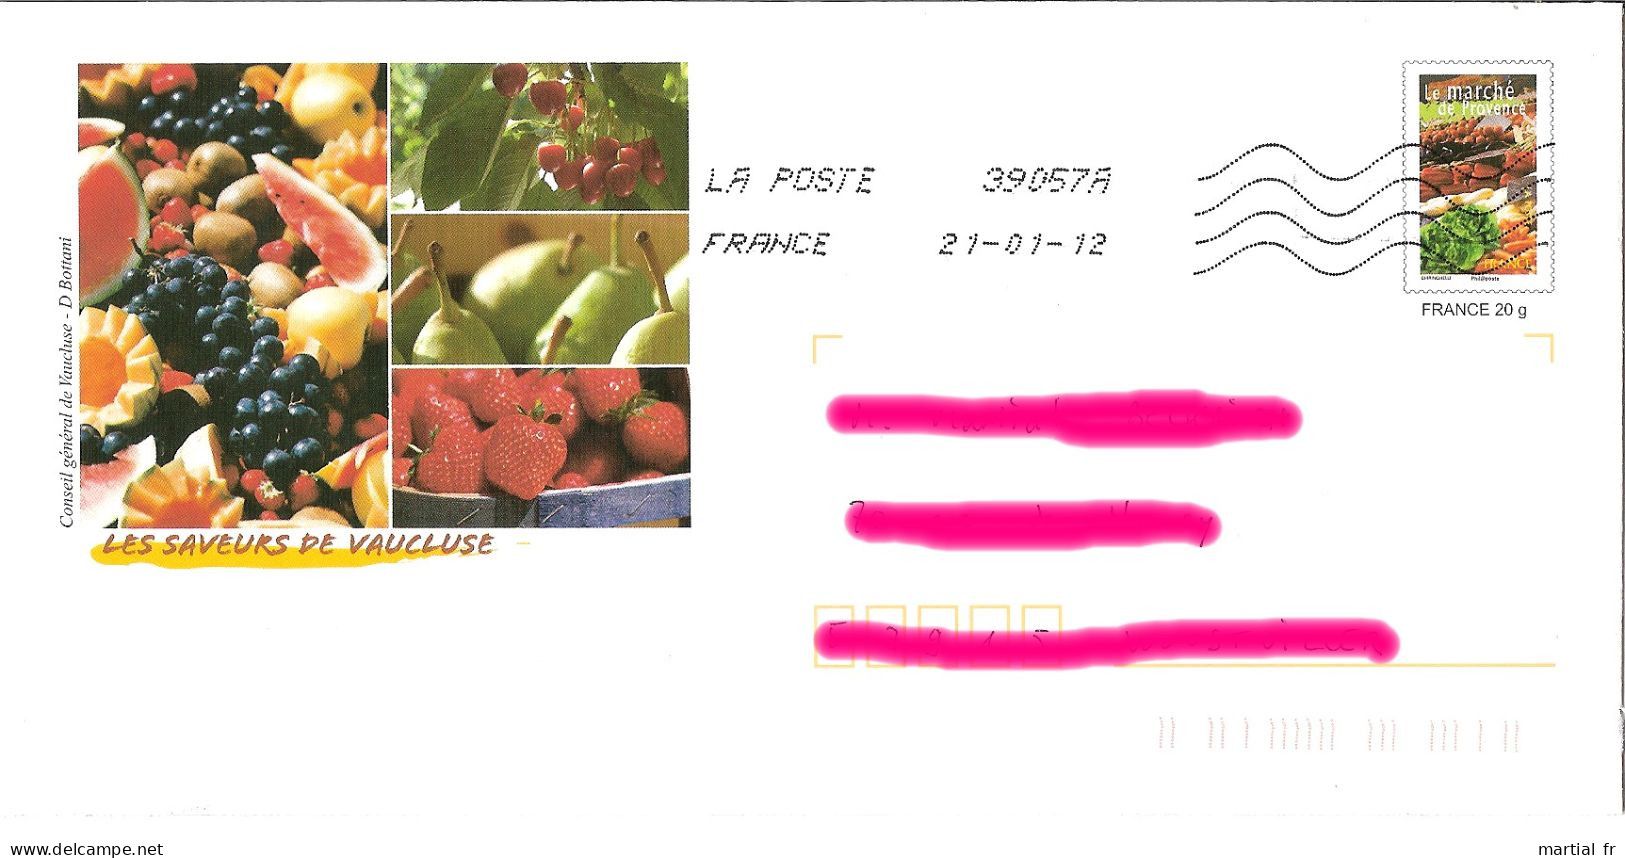 PAP FRANCE FRUIT FRUCHT OBST VAUCLUSE RAISIN PASTEQUE MELON CERISE POIRE FRAISE Marché Provence FRUIT Grape WATER MELON - Fruit